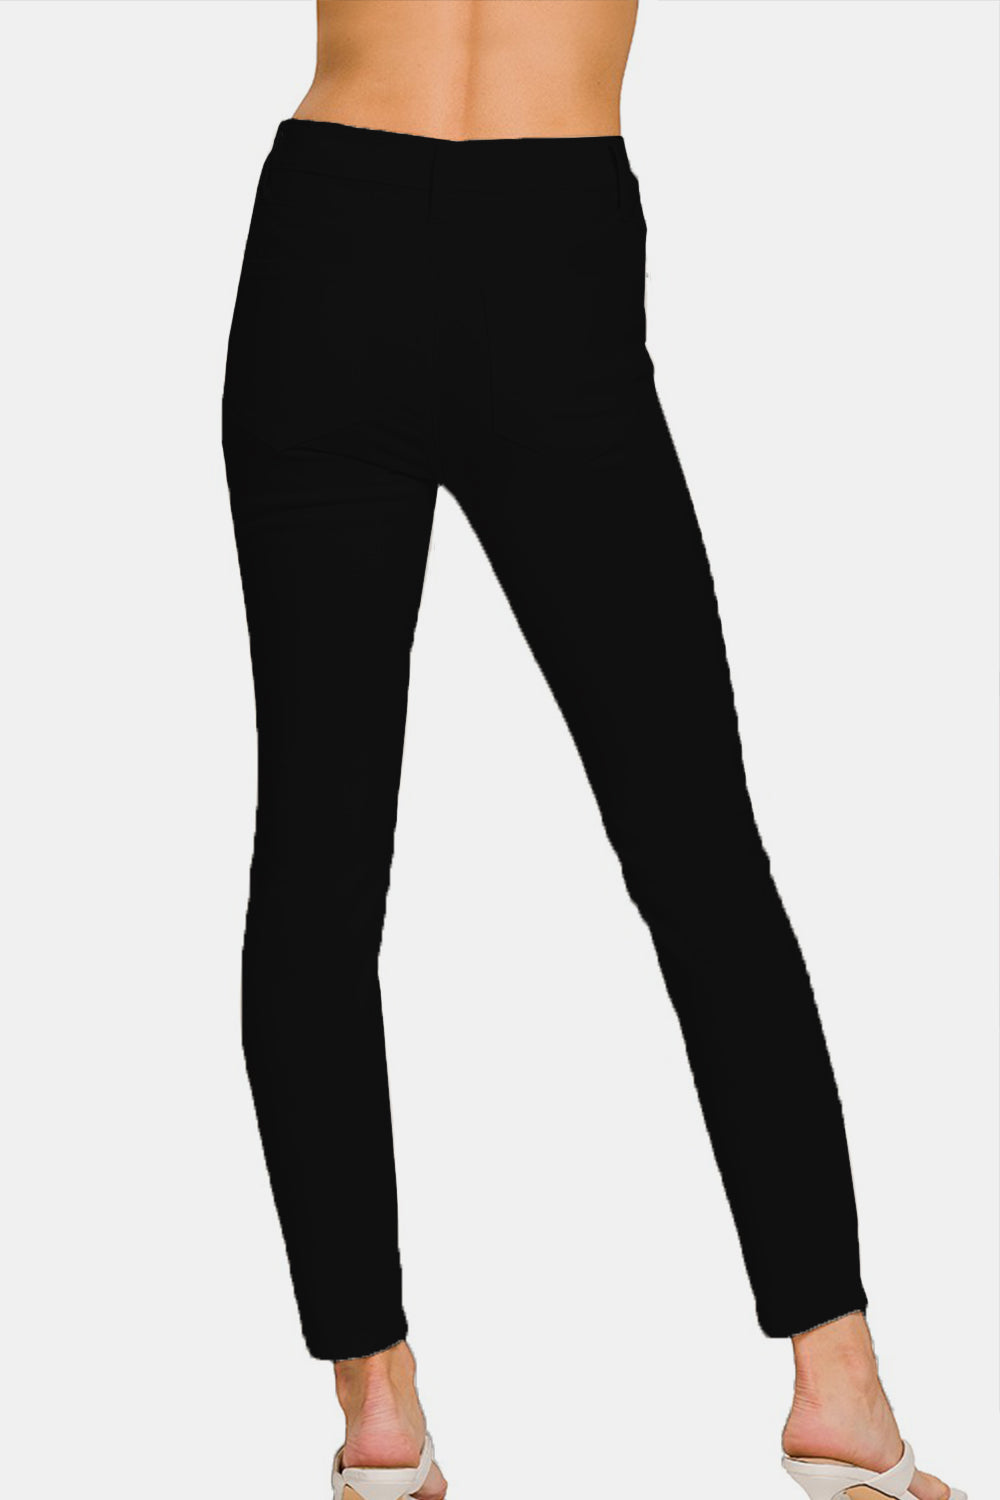 Zenana – Skinny-Jeans in voller Größe mit hohem Bund